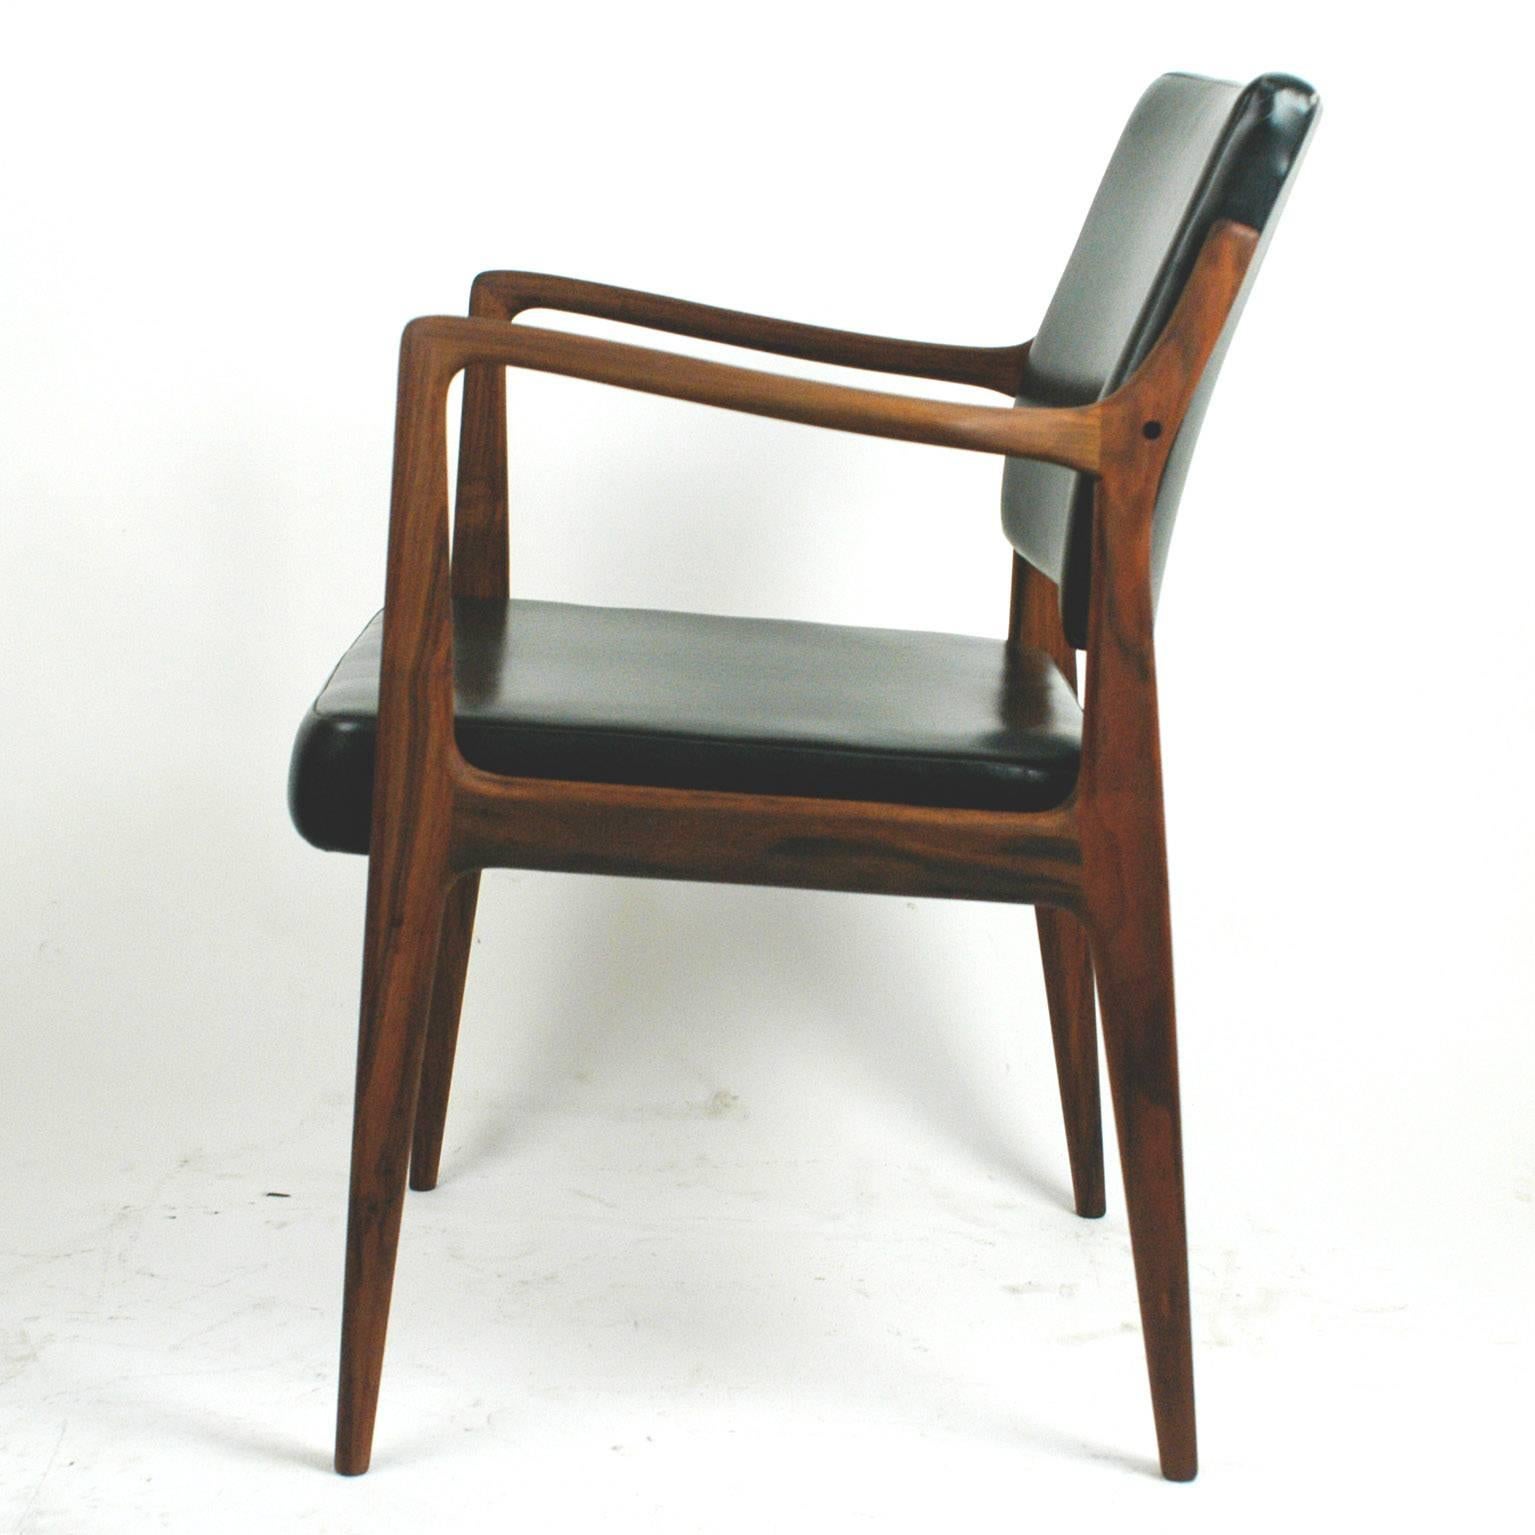 Skandinavisch moderner Sessel aus Teakholz und schwarzem Kunstleder von K. E. Ekselius (Mitte des 20. Jahrhunderts)